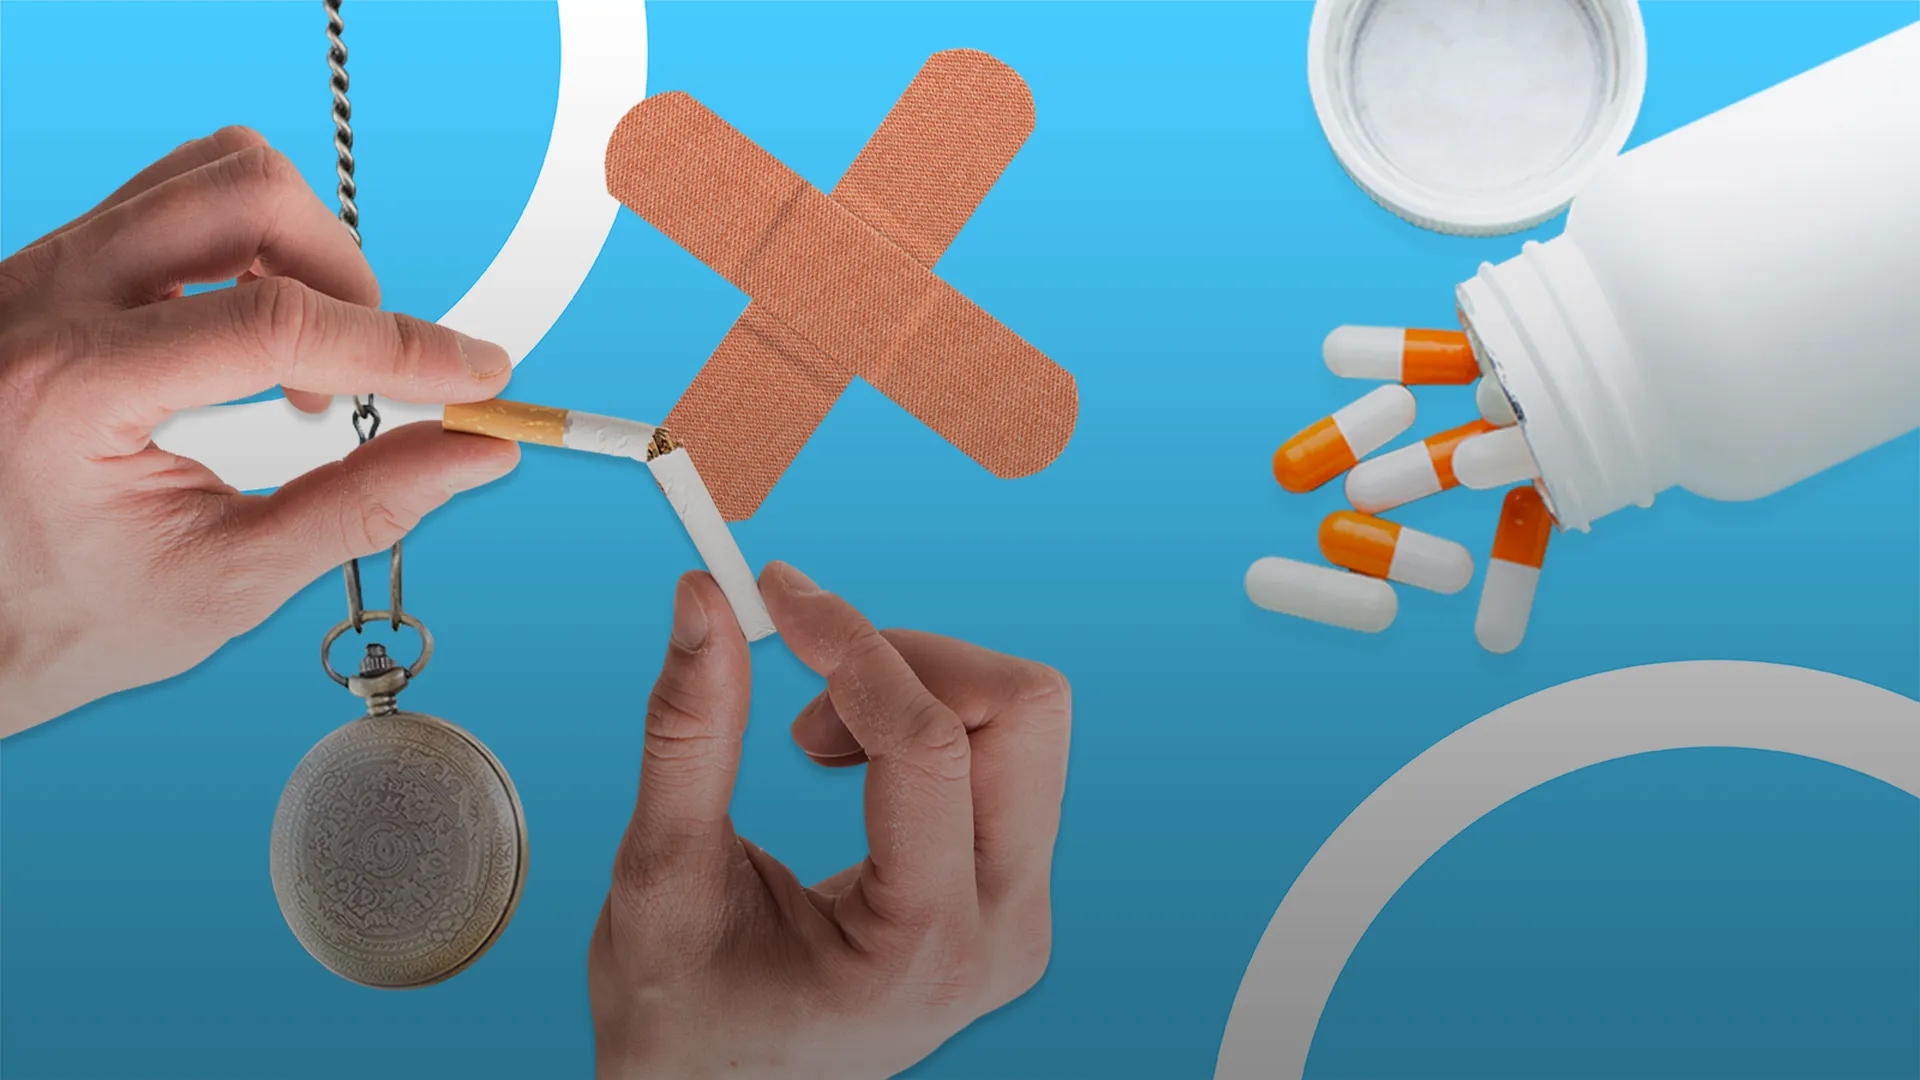 Сломаная сигарета и разнообразные таблетки и пластыри для отказа от табака